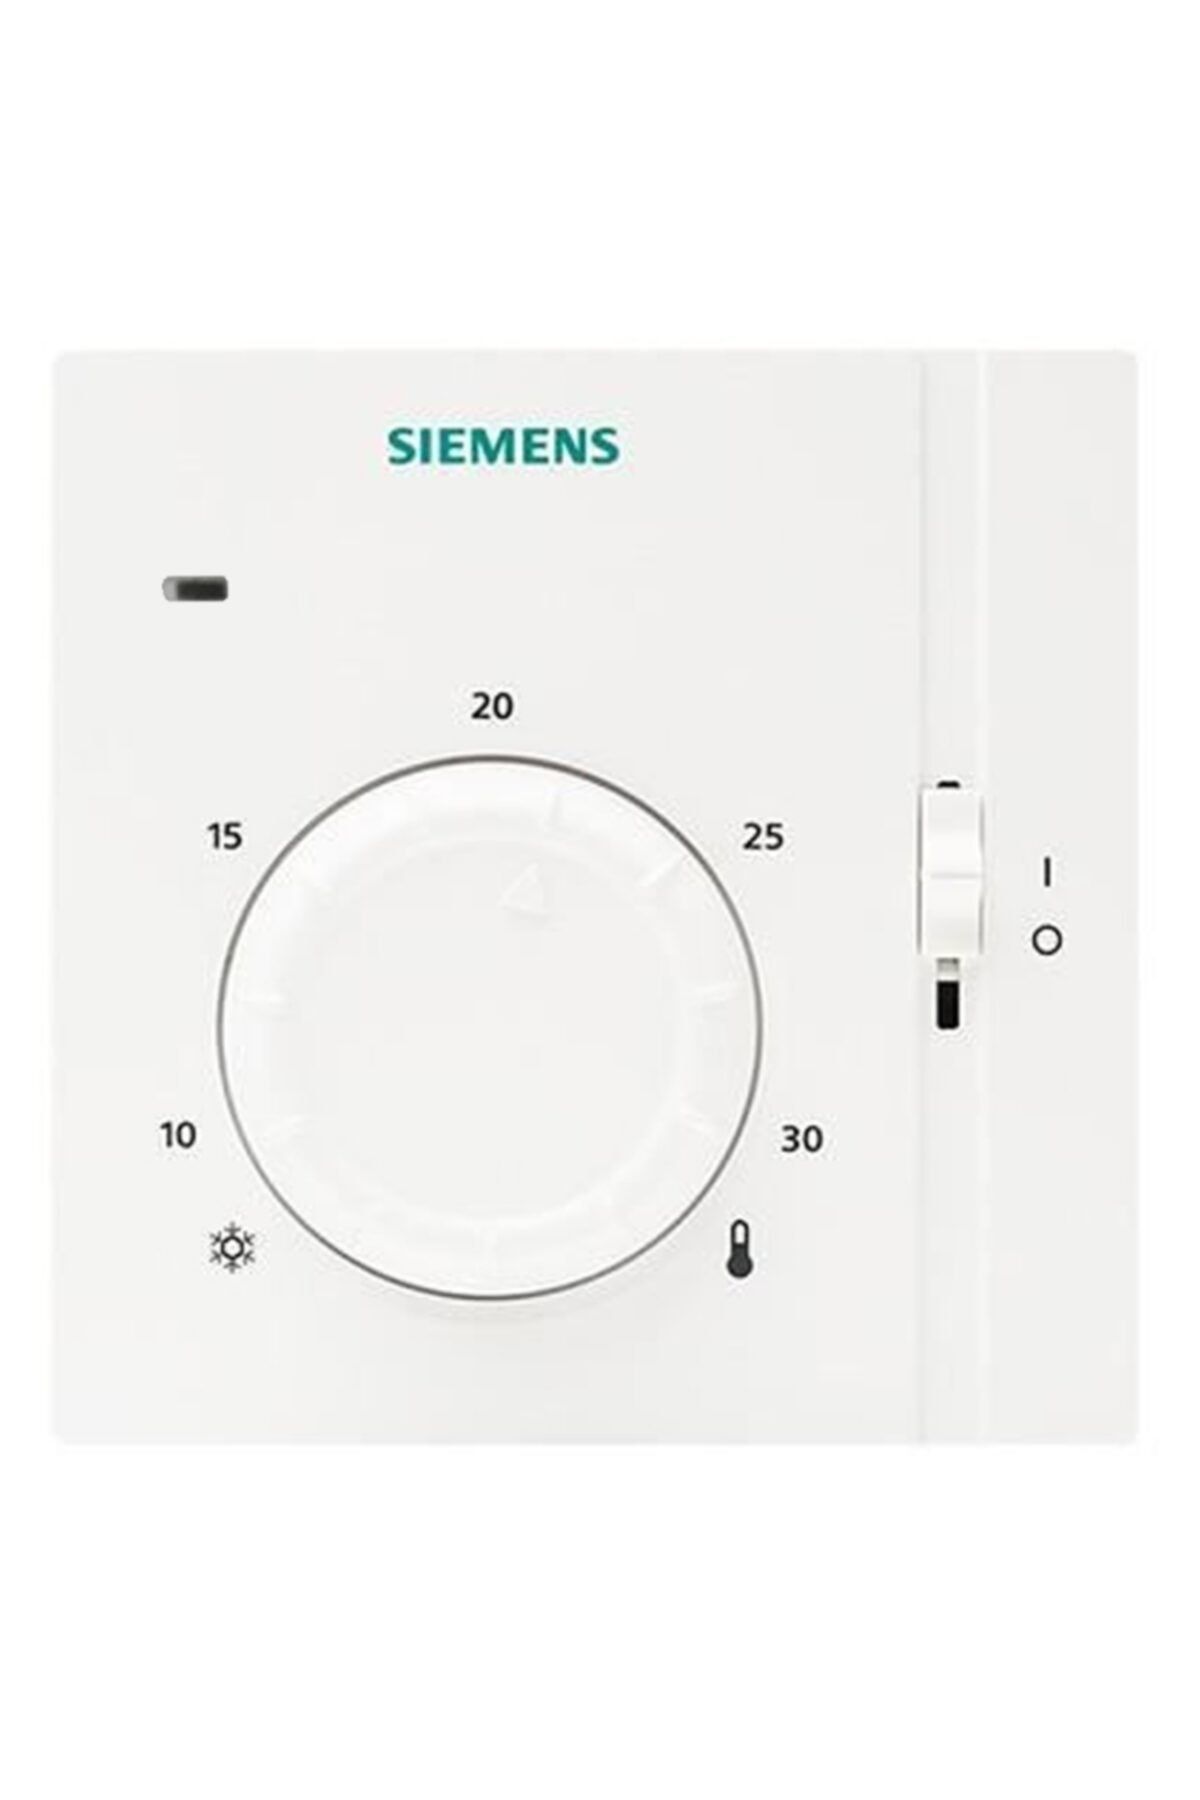 Siemens Kombi Ve Yerden Isıtma Sistemleri Oda Termostatı - Raa31.16